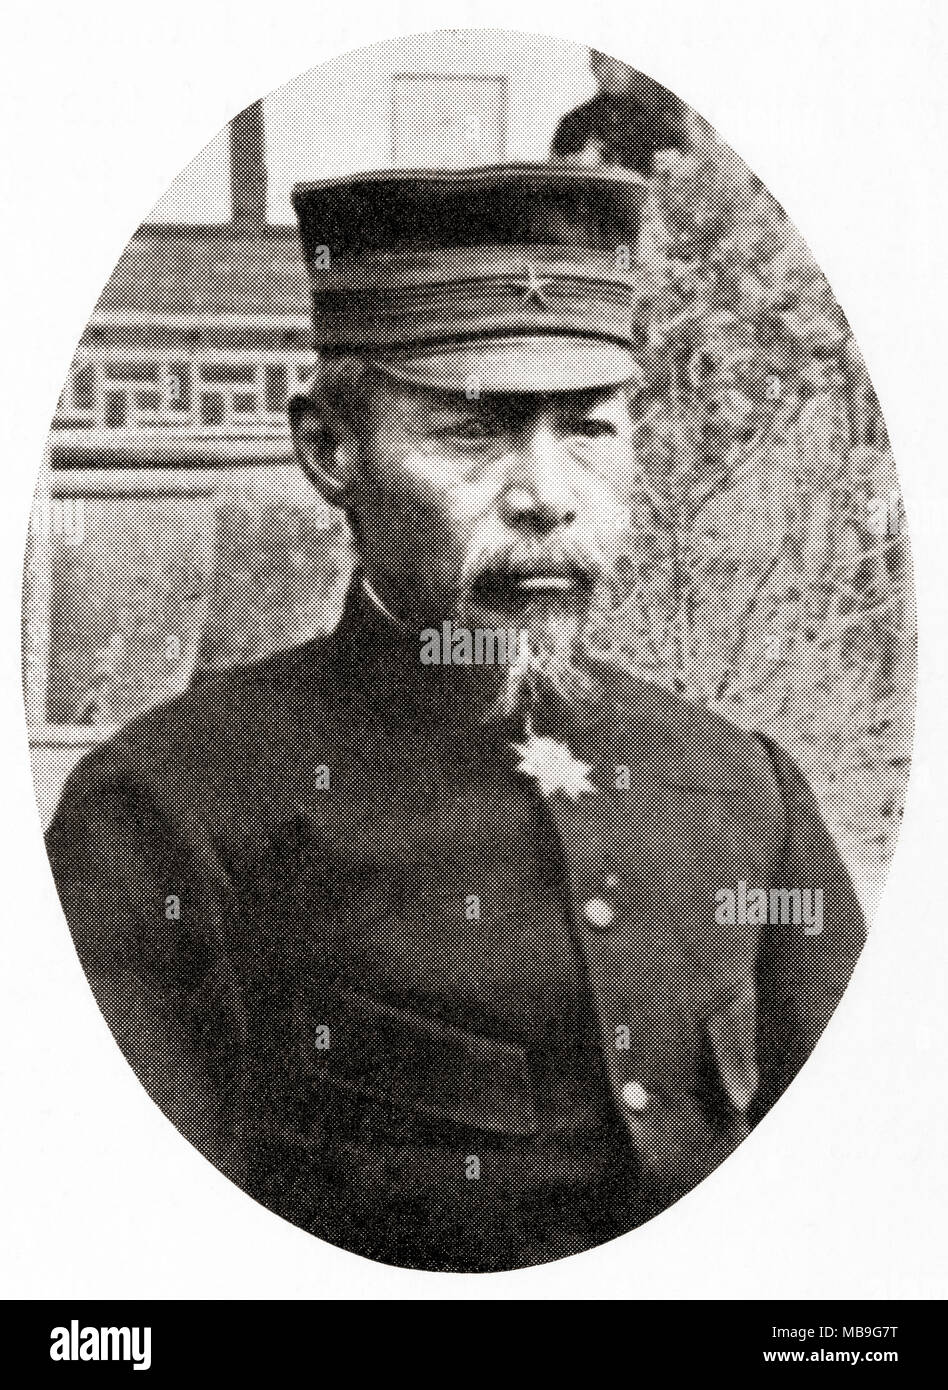 Yasukata Oku Count, 1847 - 1930. Le maréchal japonais et figure de premier plan de l'Armée impériale japonaise. L'histoire de Hutchinson de l'ONU, publié 1915 Banque D'Images